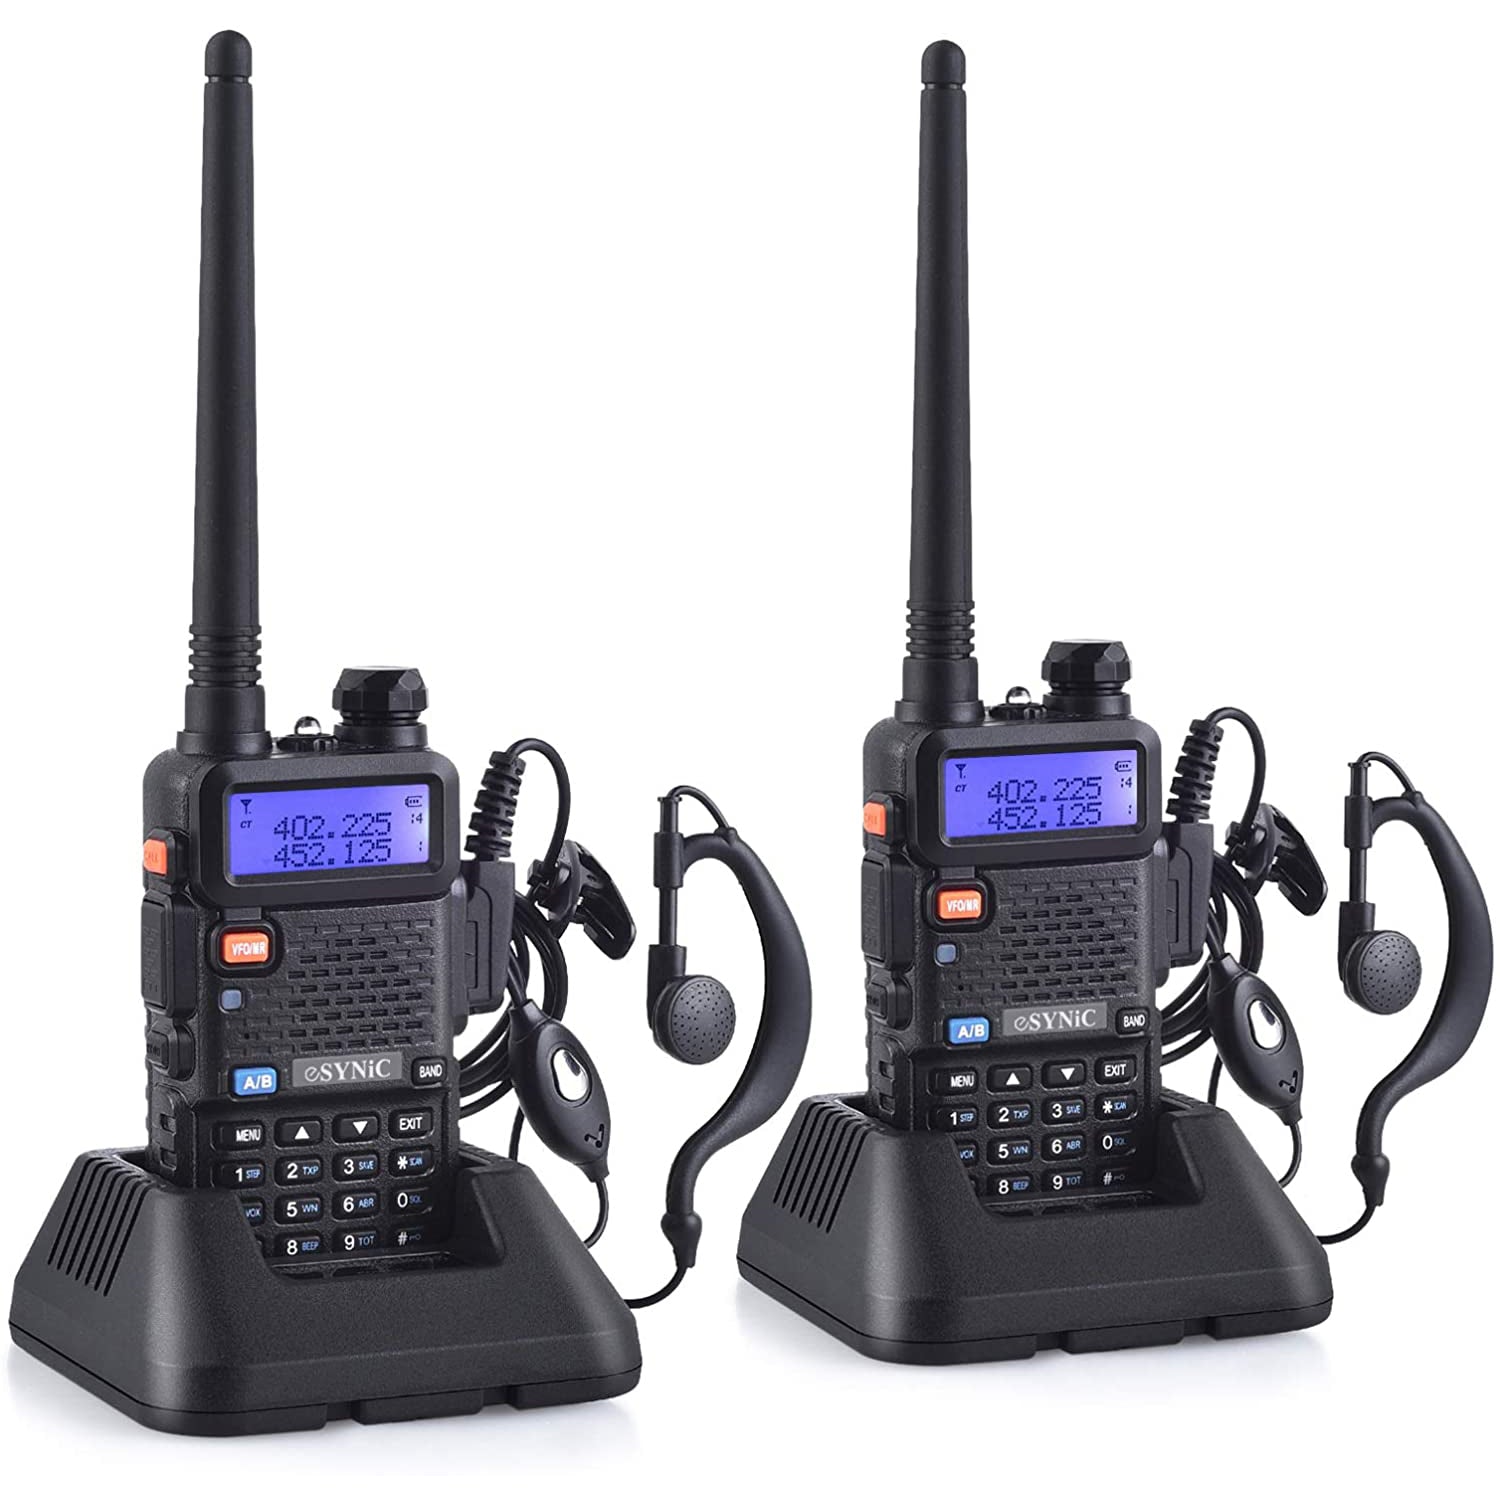 eSynic 2Pcs UV-5R Walkie Talkie professional walkie talkie